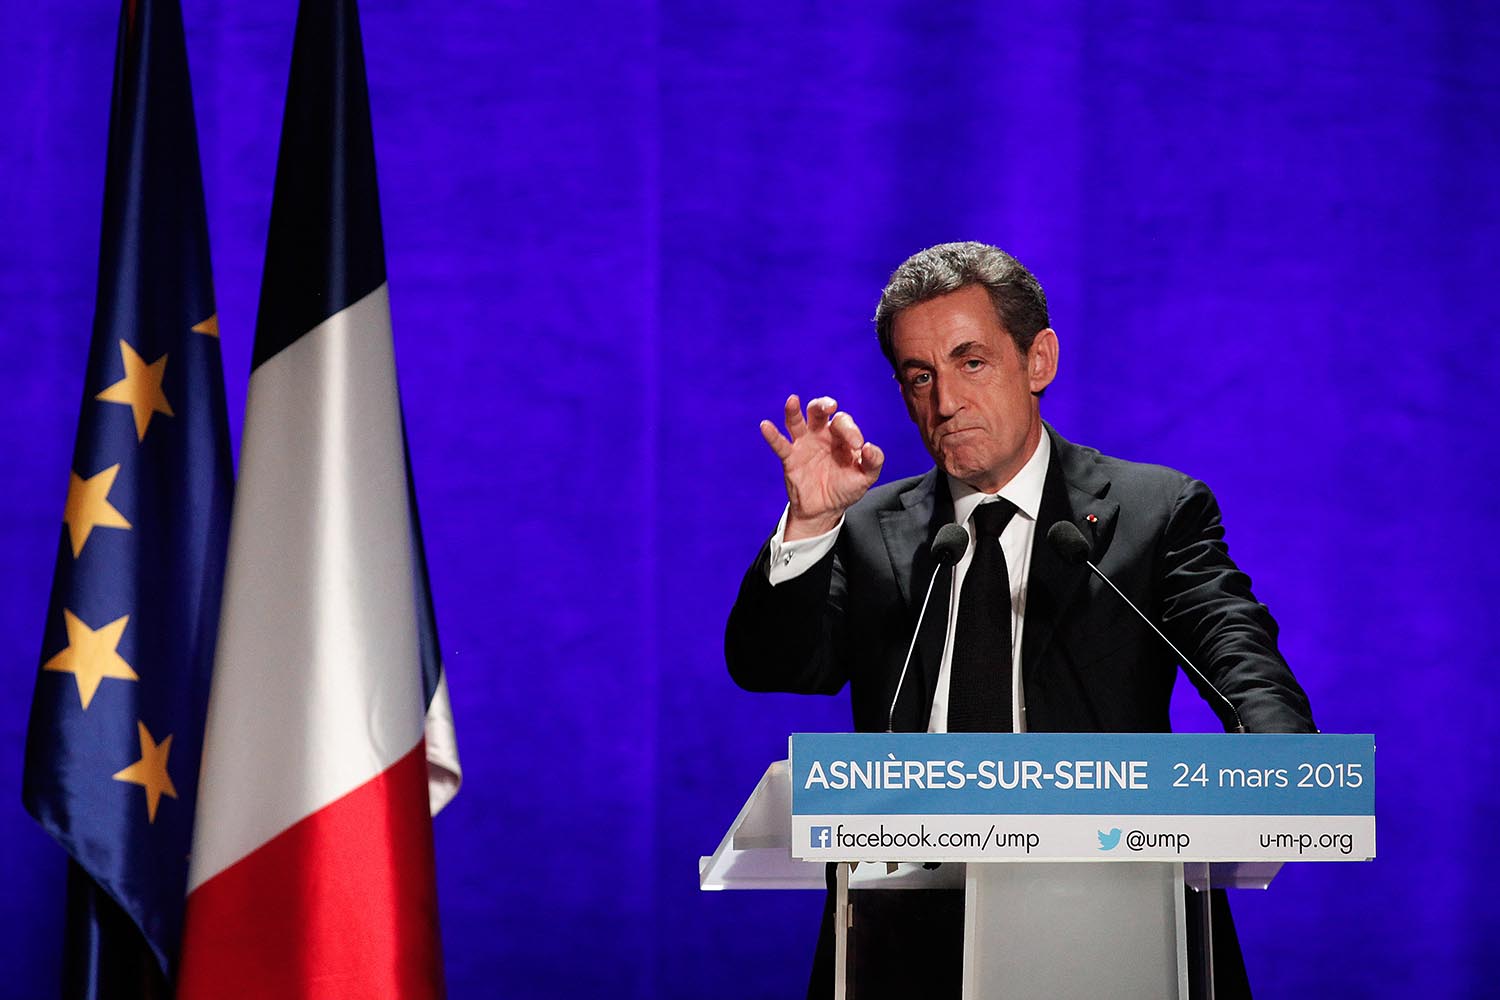 Sarkozy quiere cambiar el nombre de su partido